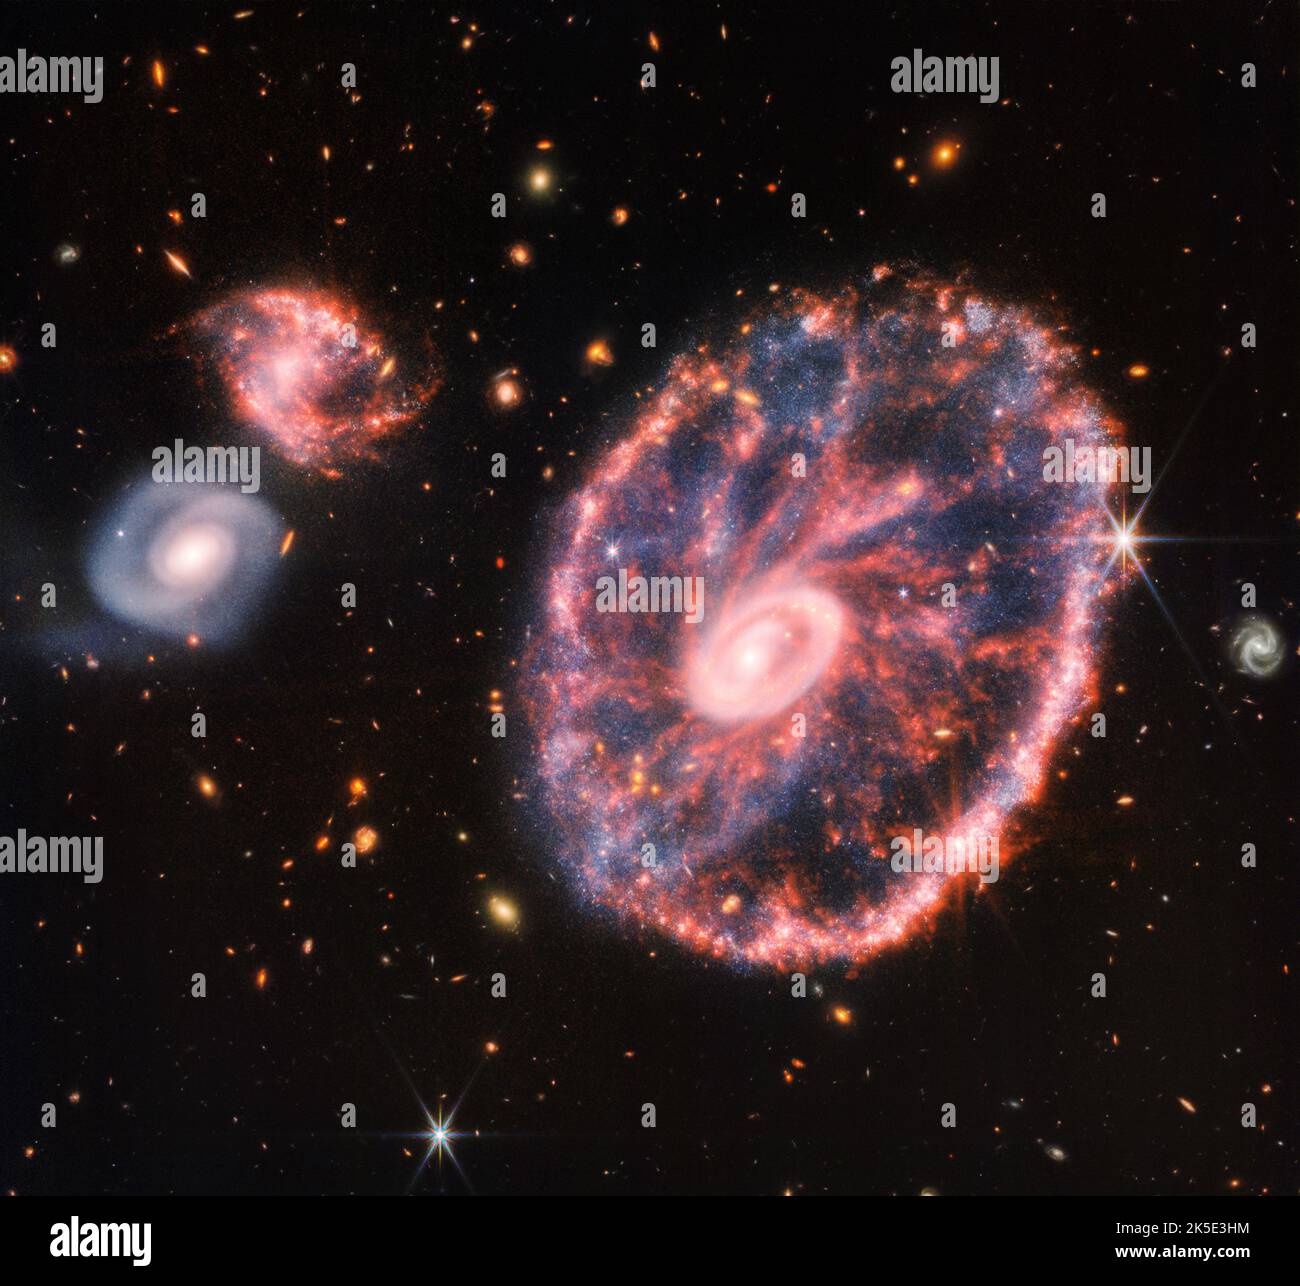 Höchste Auflösung eines James Webb Space Telescope Composite-Bildes, das das Cartwheel und seine Begleitergalaxien zeigt. Das Cartwheel besteht aus zwei Ringen, einem hellen inneren Ring und einem bunten äußeren Ring. Beide Ringe dehnen sich vom Zentrum des Zusammenstoßes wie Schockwellen aus. Diese Momentaufnahme gibt einen Ausblick darauf, was in der Vergangenheit mit der Galaxie passiert ist und was sie in Zukunft tun wird. Quelle: NASA, ESA, CSA und STScI / Digitaleye Stockfoto